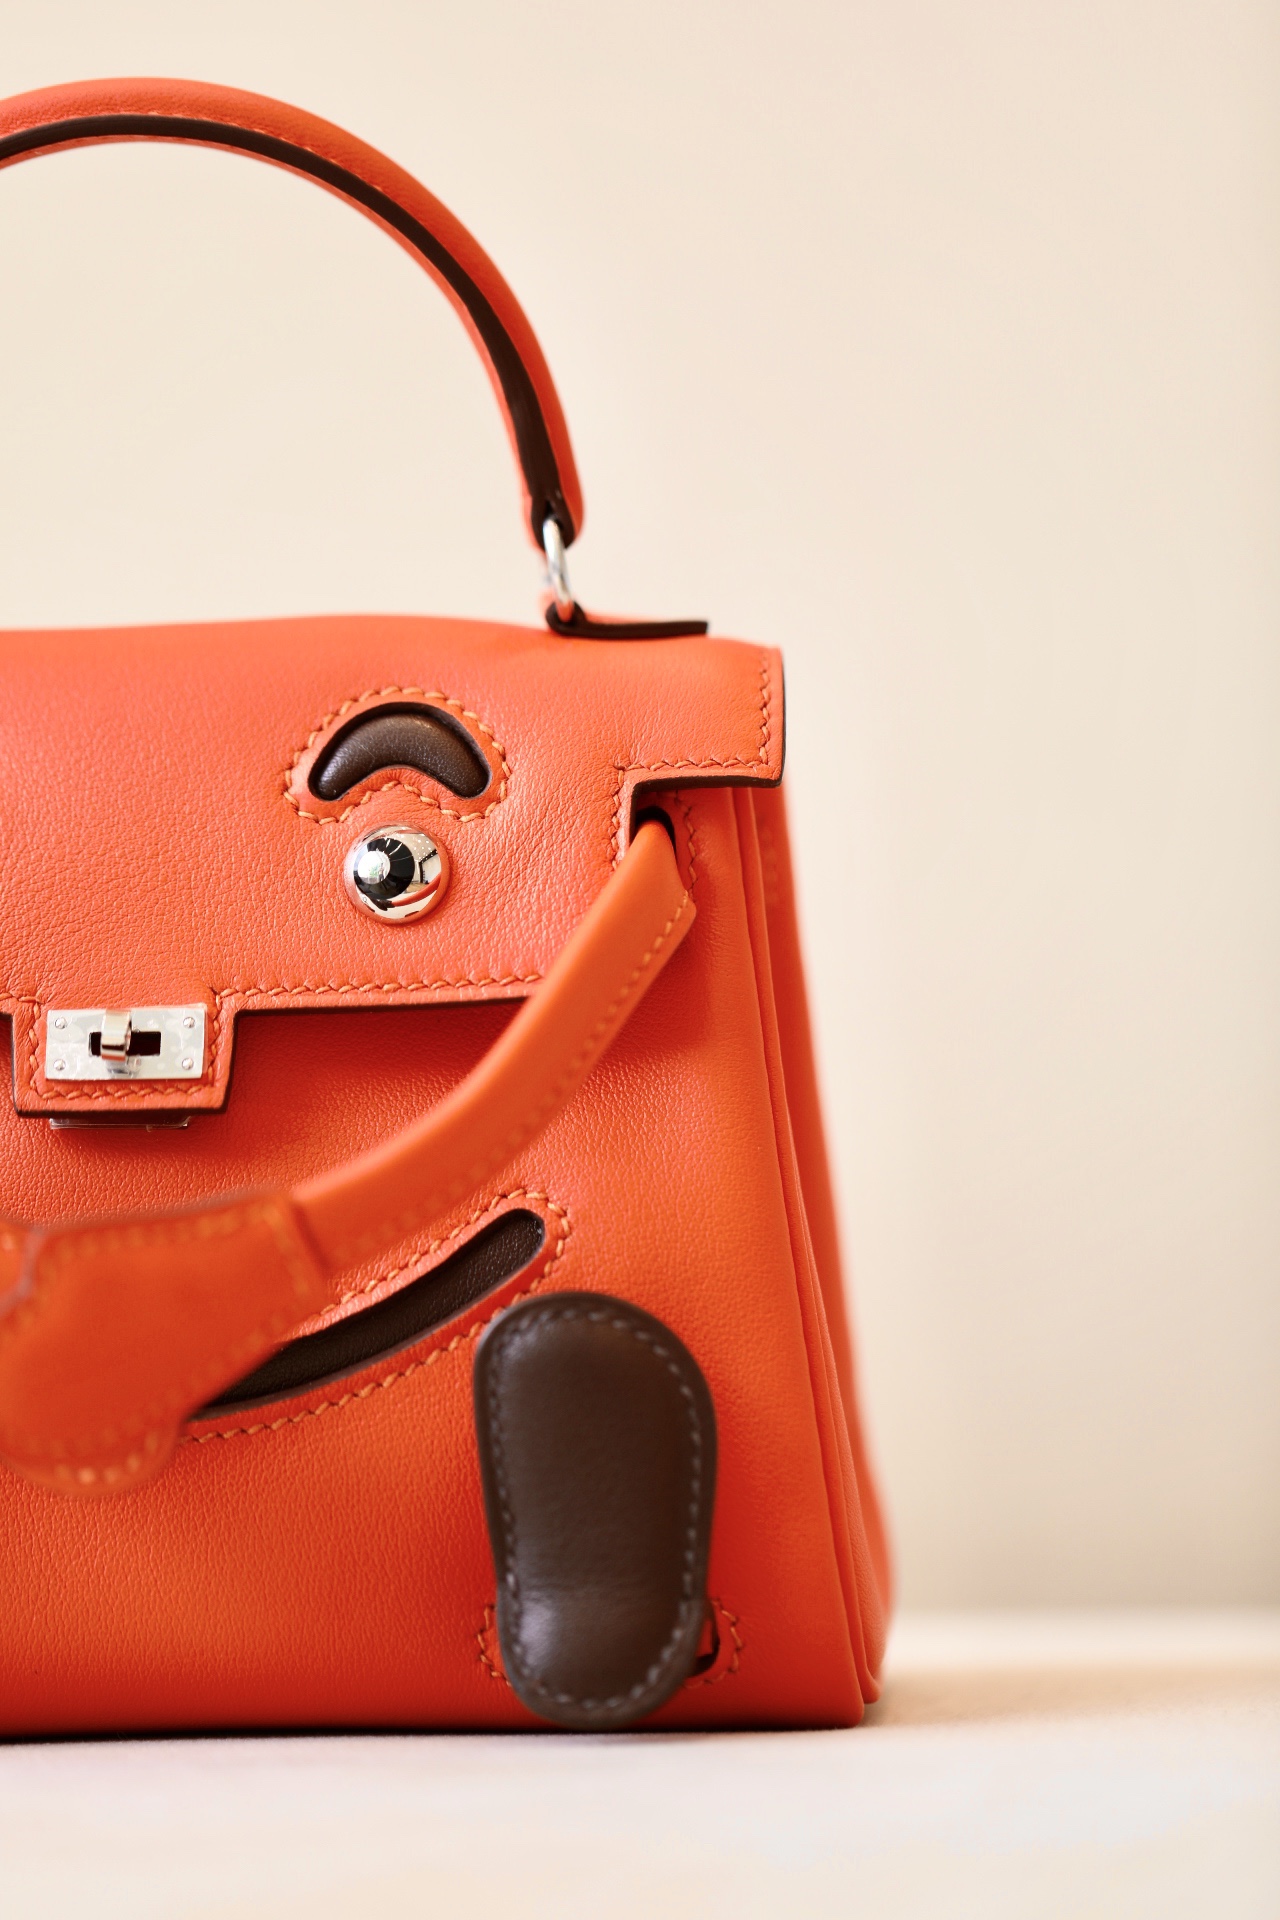 Buy High-Quality Fake
 Hermes Kelly Handbags Crossbody & Shoulder Bags Replica Every Designer
 Cowhide Vintage